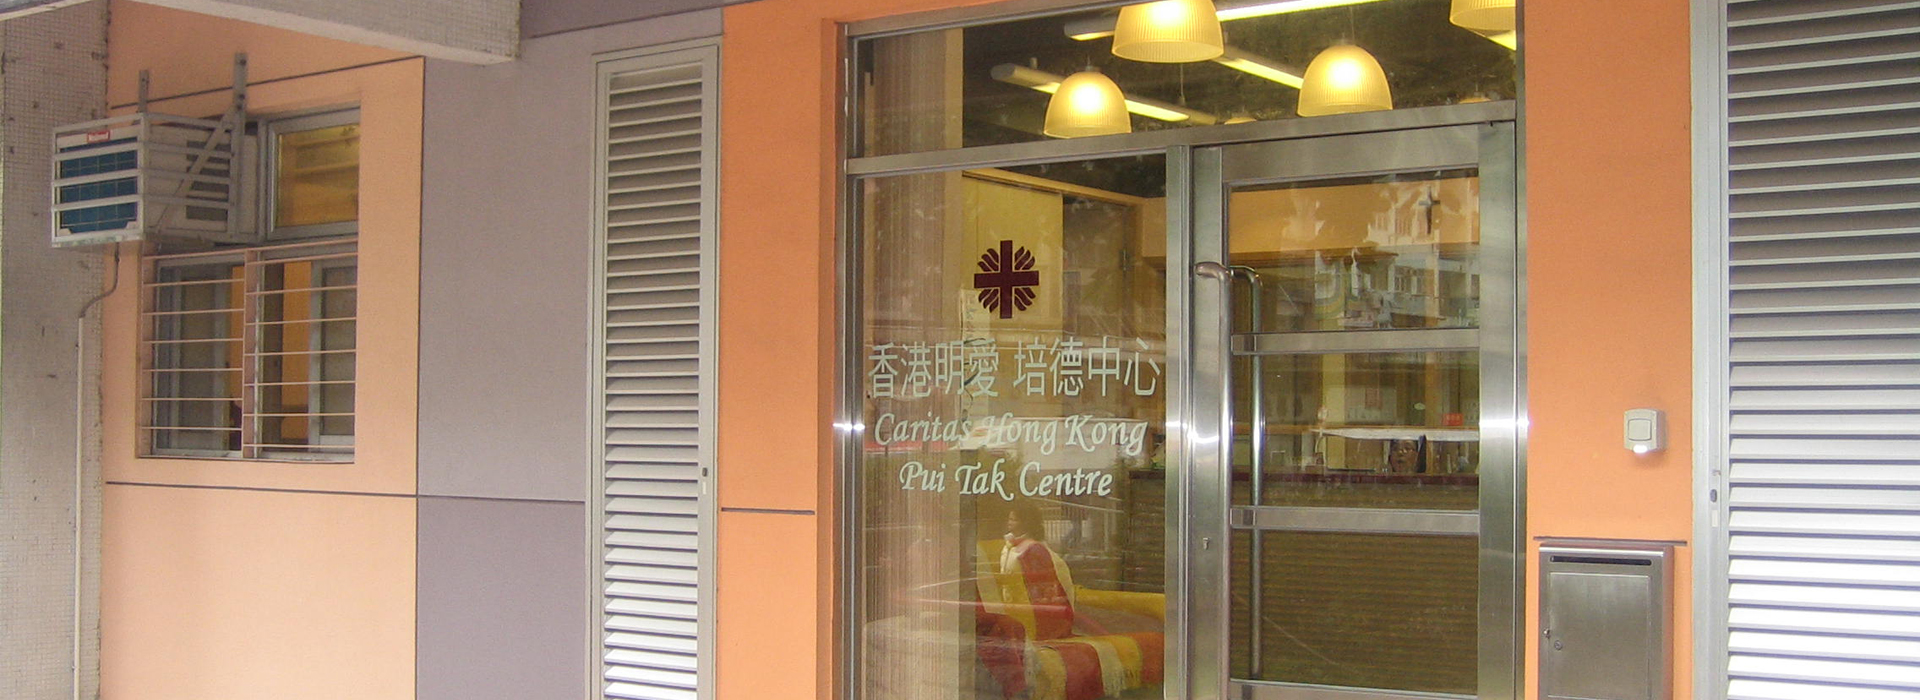 Caritas Pui Tak Centre